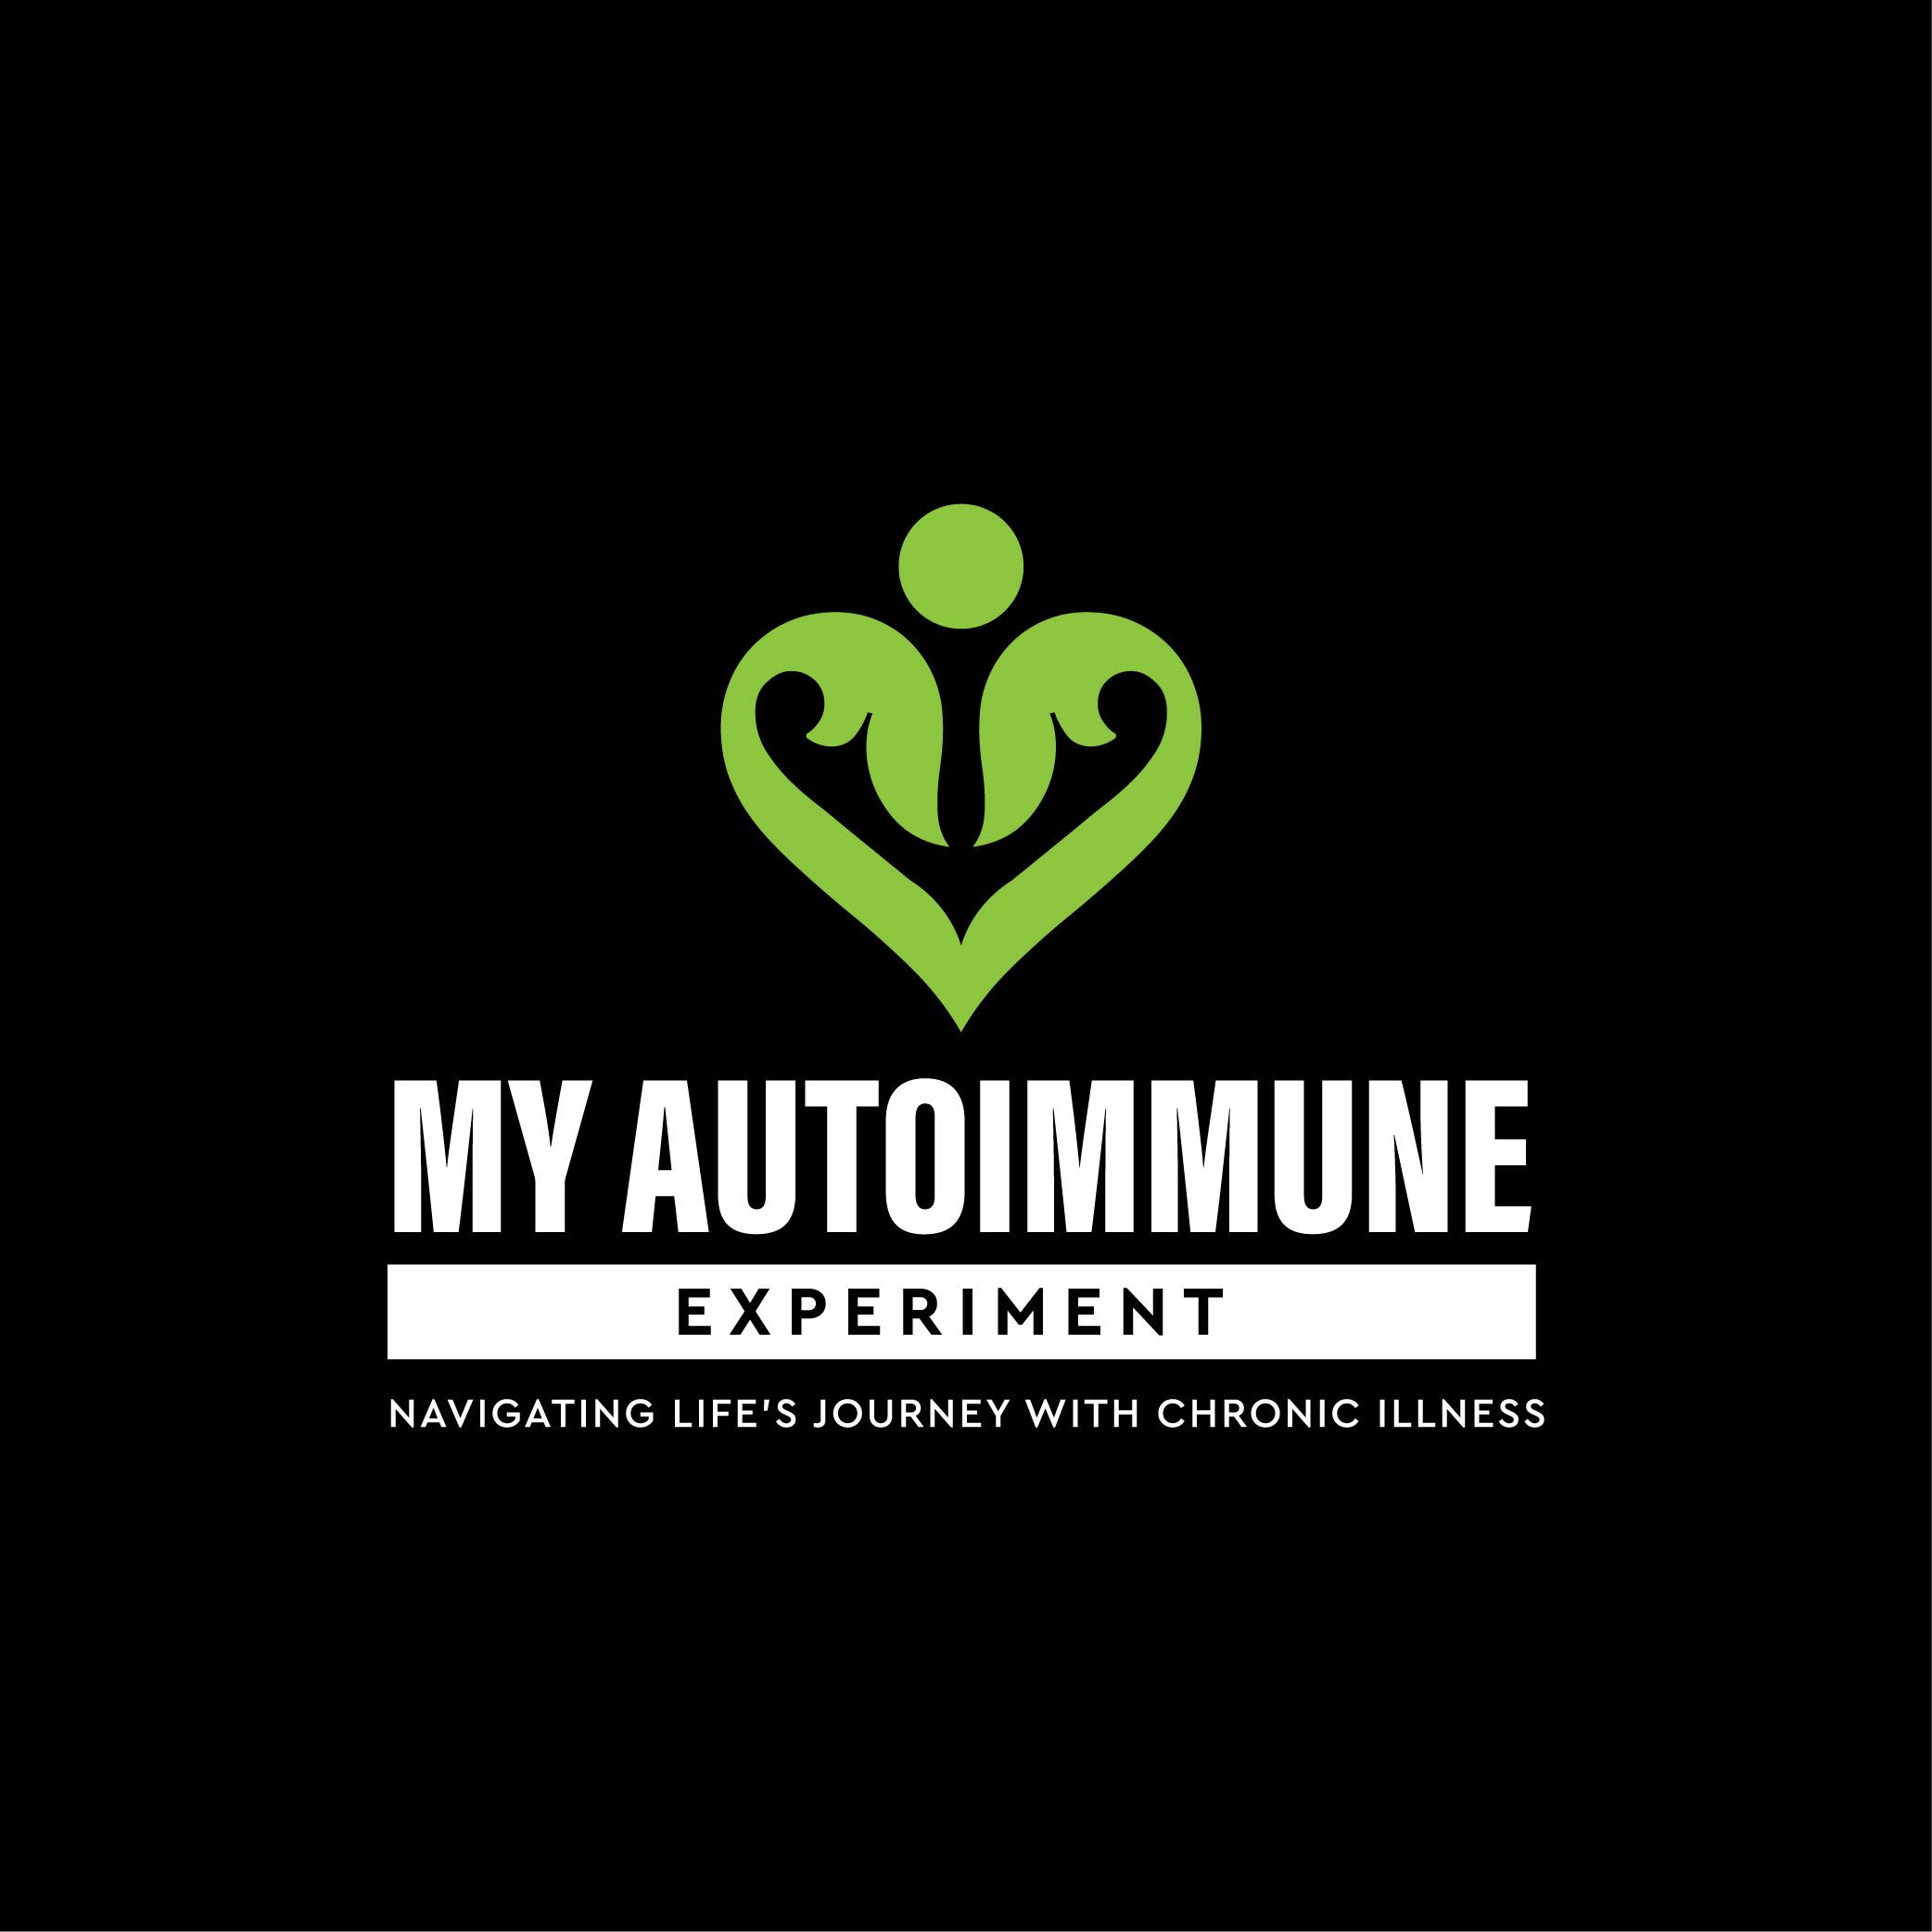 My Autoimmune Experiment